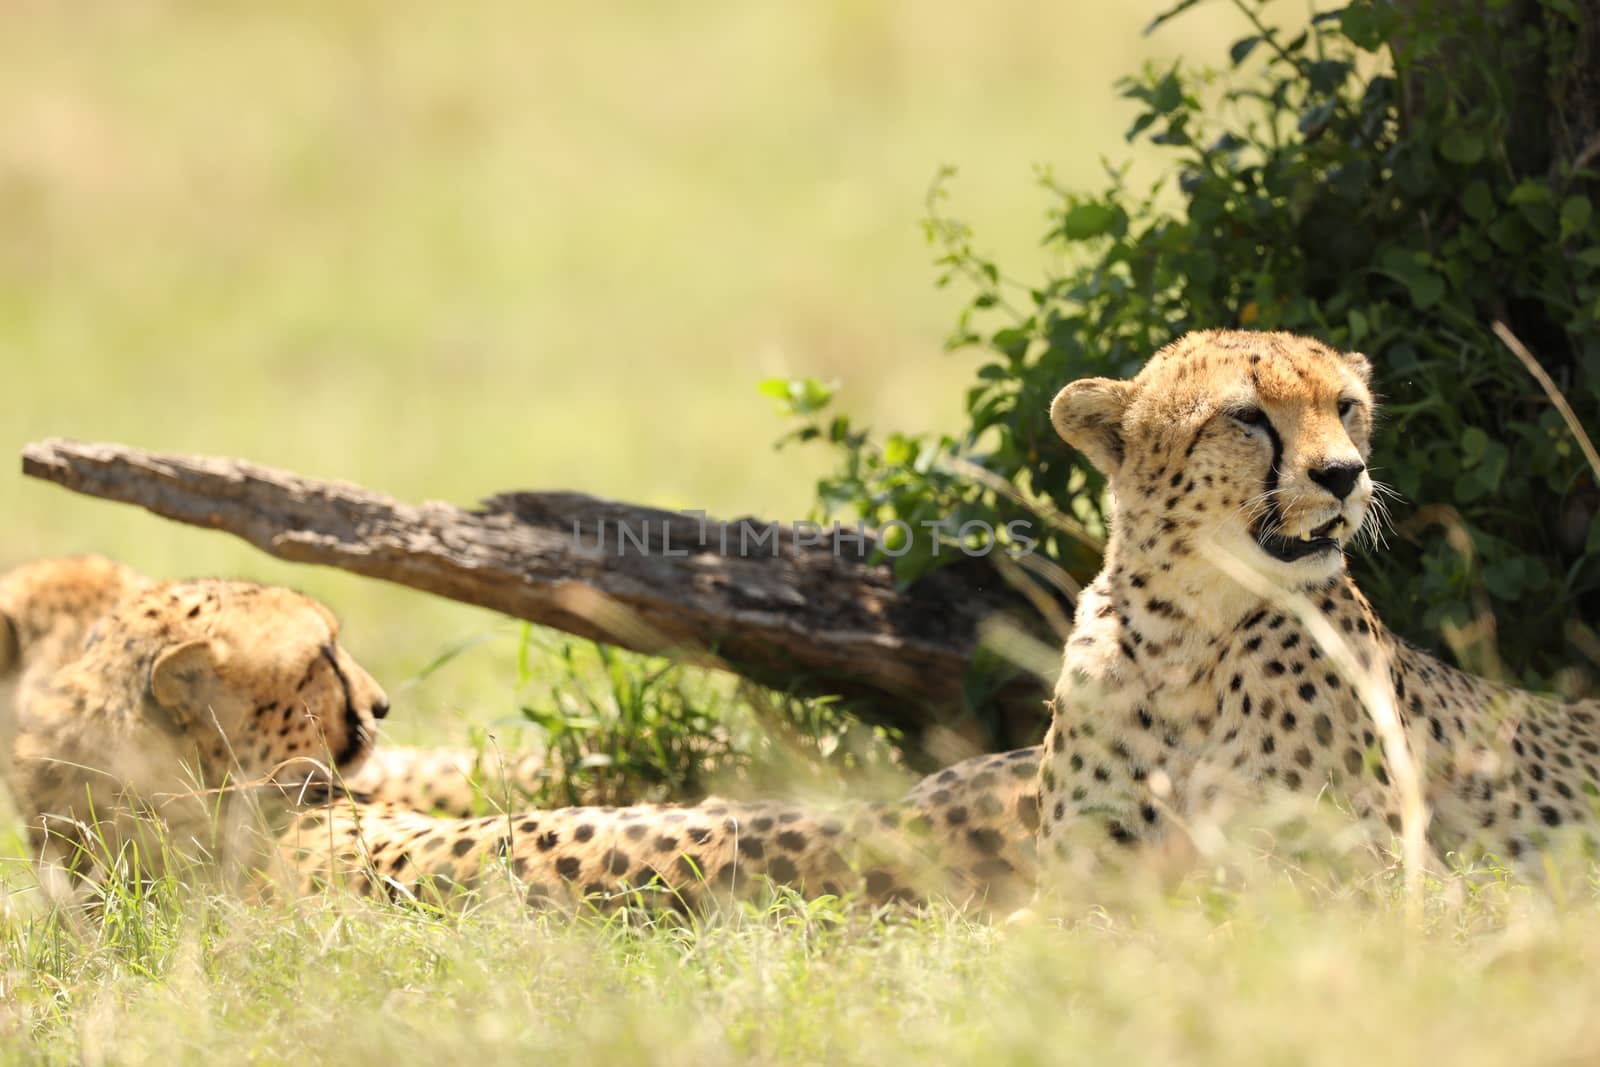 Cheetah In Grass by rajastills